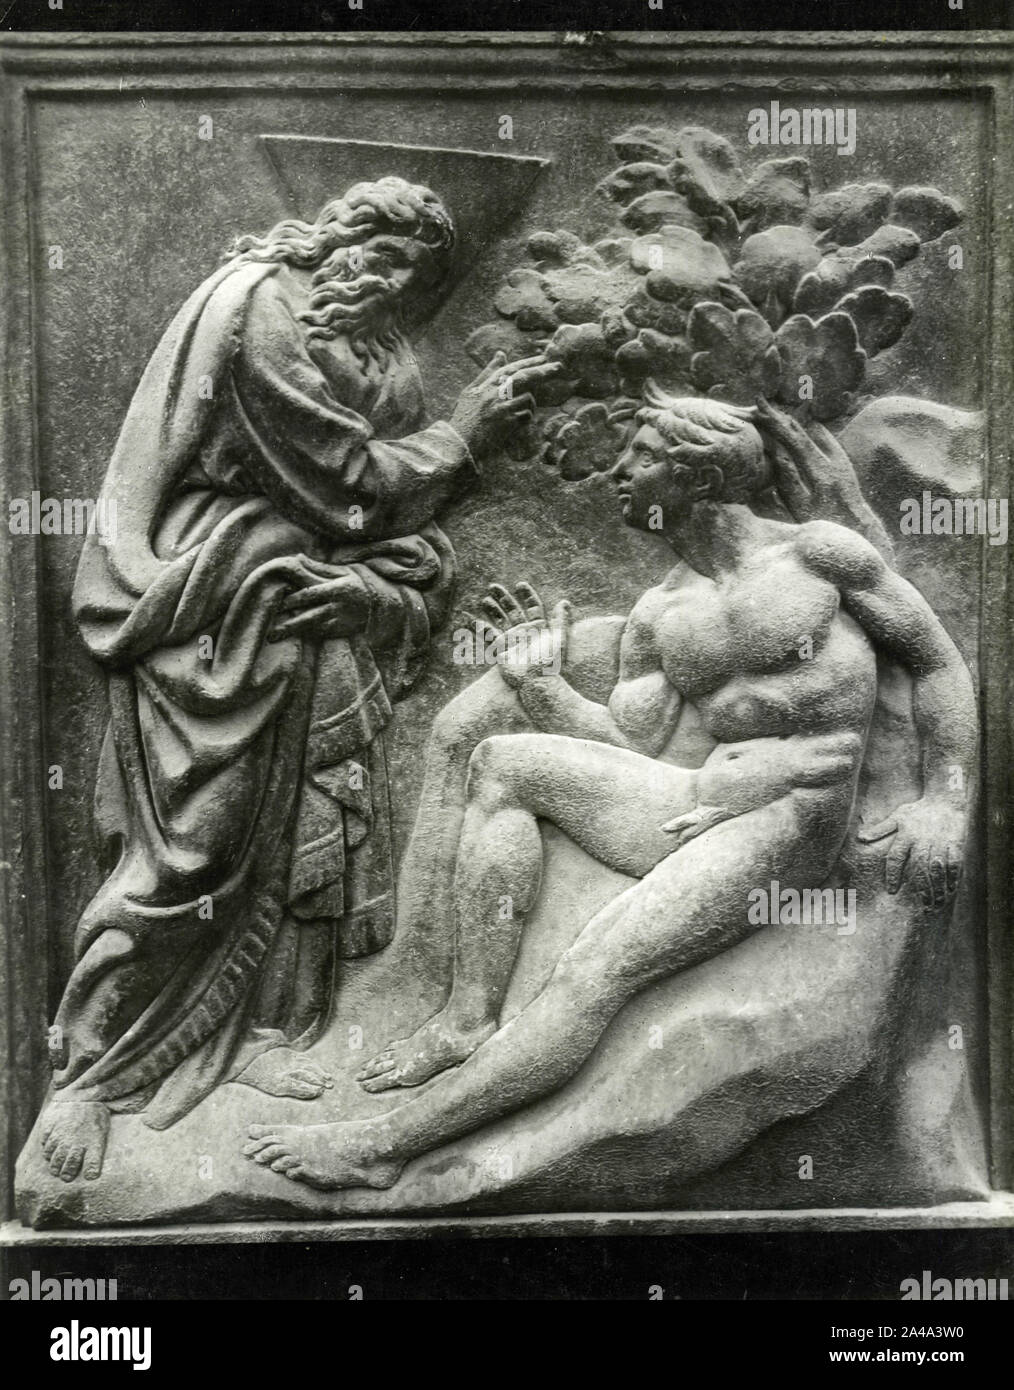 La creazione di Adamo, bassorilievo di artista italiano Jacopo della Quercia, portale principale di San Petronio Chiesa, Bologna, Italia 1930 Foto Stock